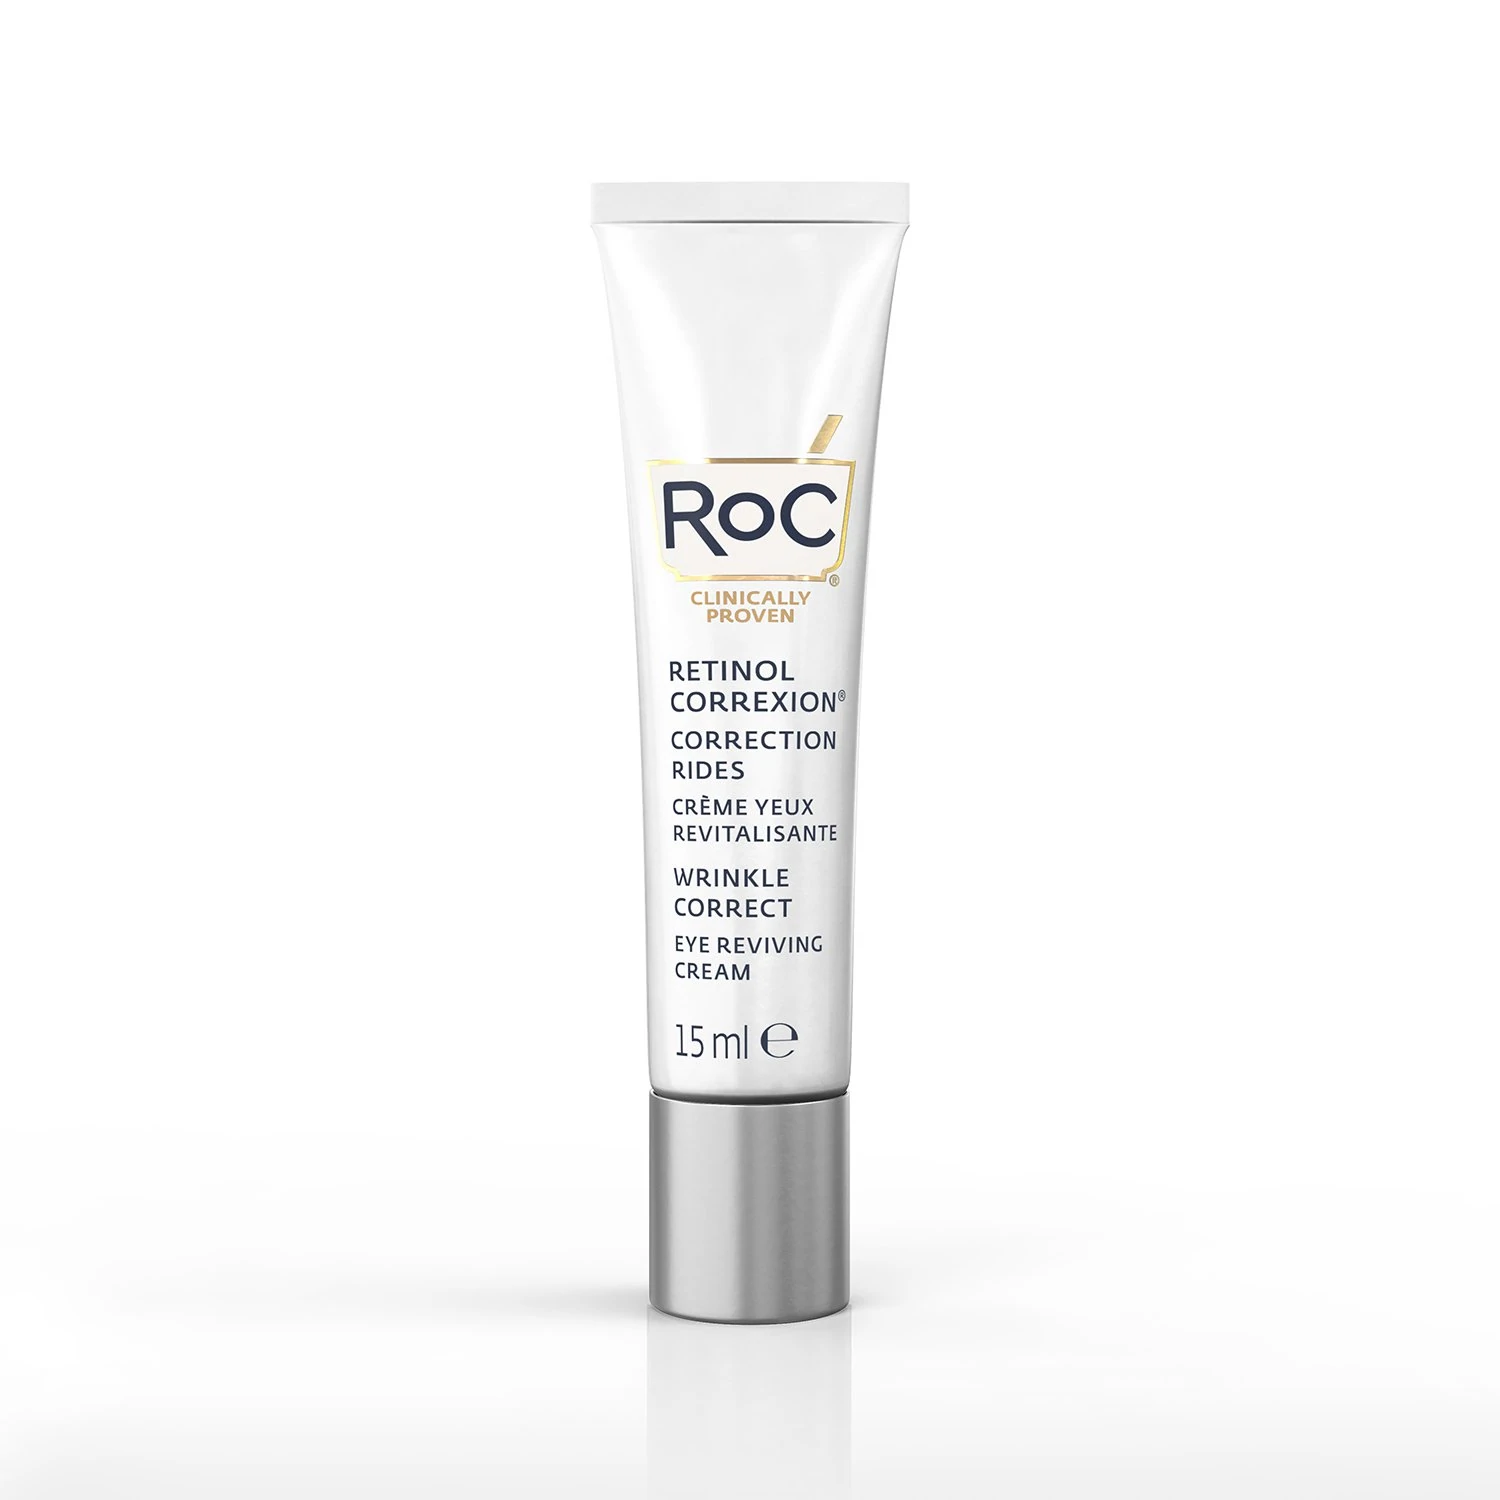 ROC RETINOL CORREXION® Wrinkle Correct Crema De Ojos. Con nuestra avanzada combinación de RoC® Retinol y ácido hialurónico esta crema de ojos reduce visiblemente las líneas de expresión y las arrugas.